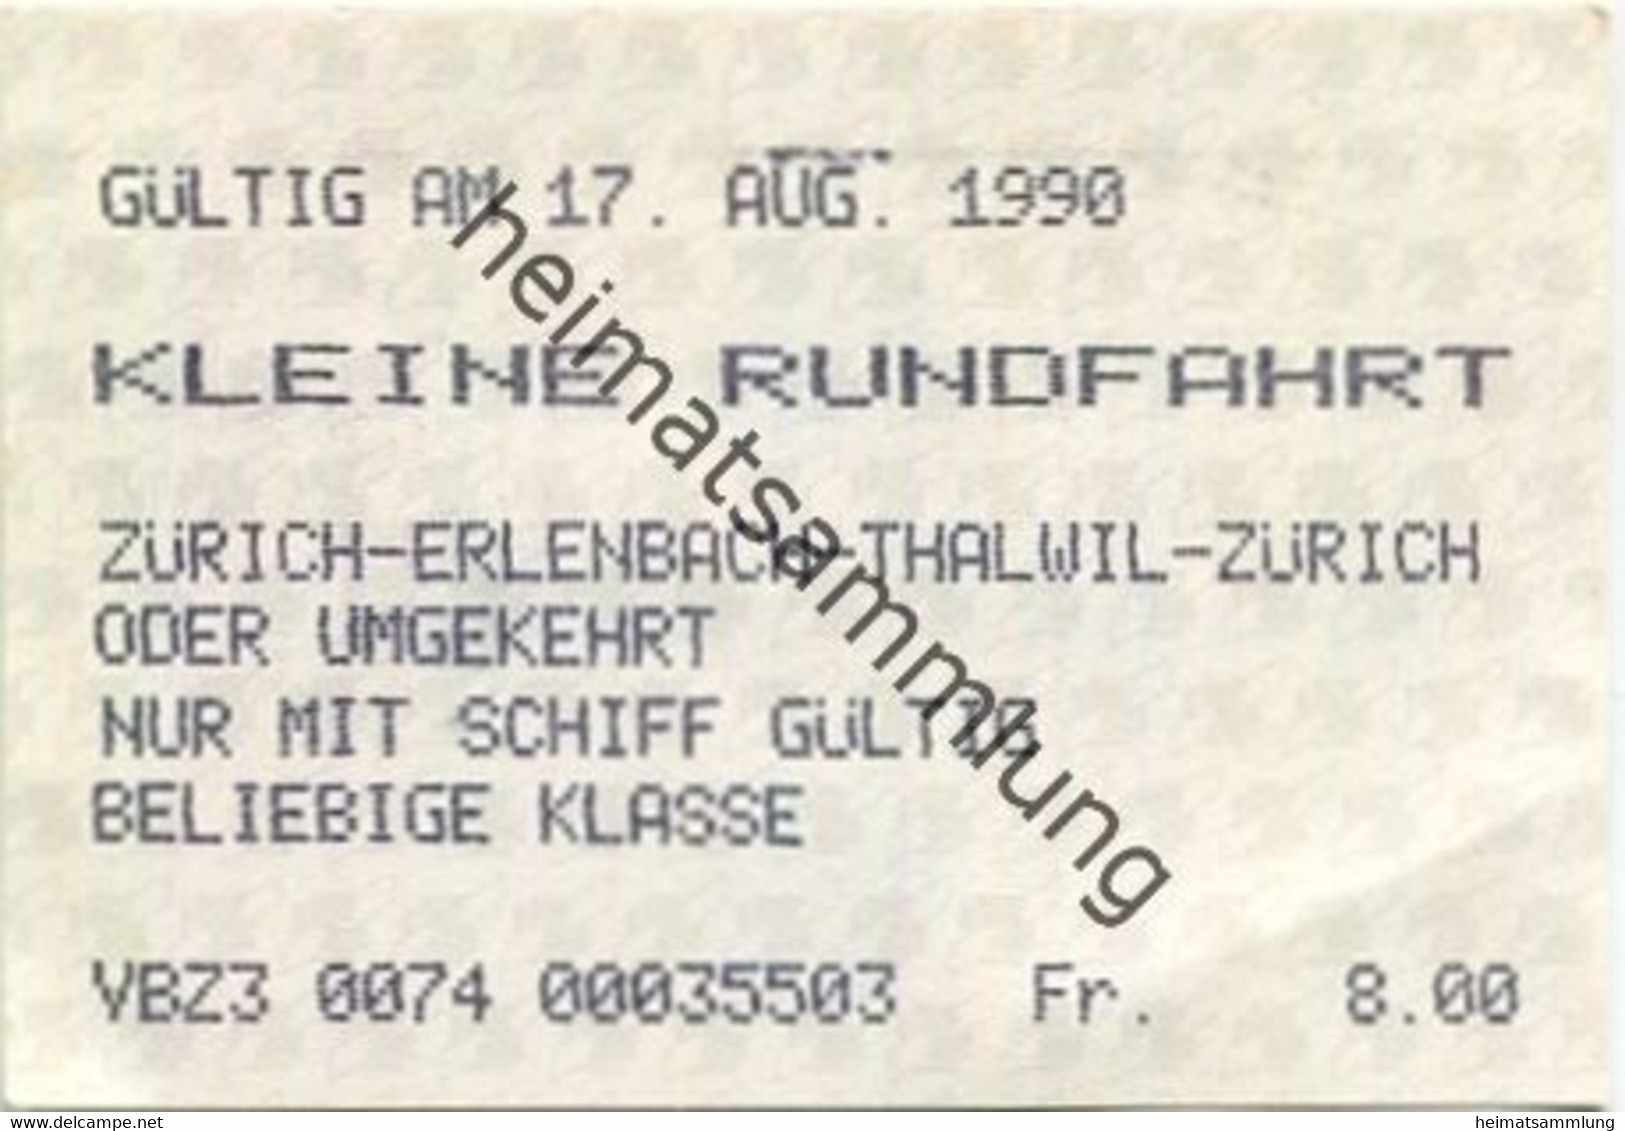 Schweiz - Zürichsee - Kleine Rundfahrt - Zürich Erlenbach Thalwil Zürich Oder Umgekehrt - Nur Mit Schiff - Fahrkarte 199 - Europa